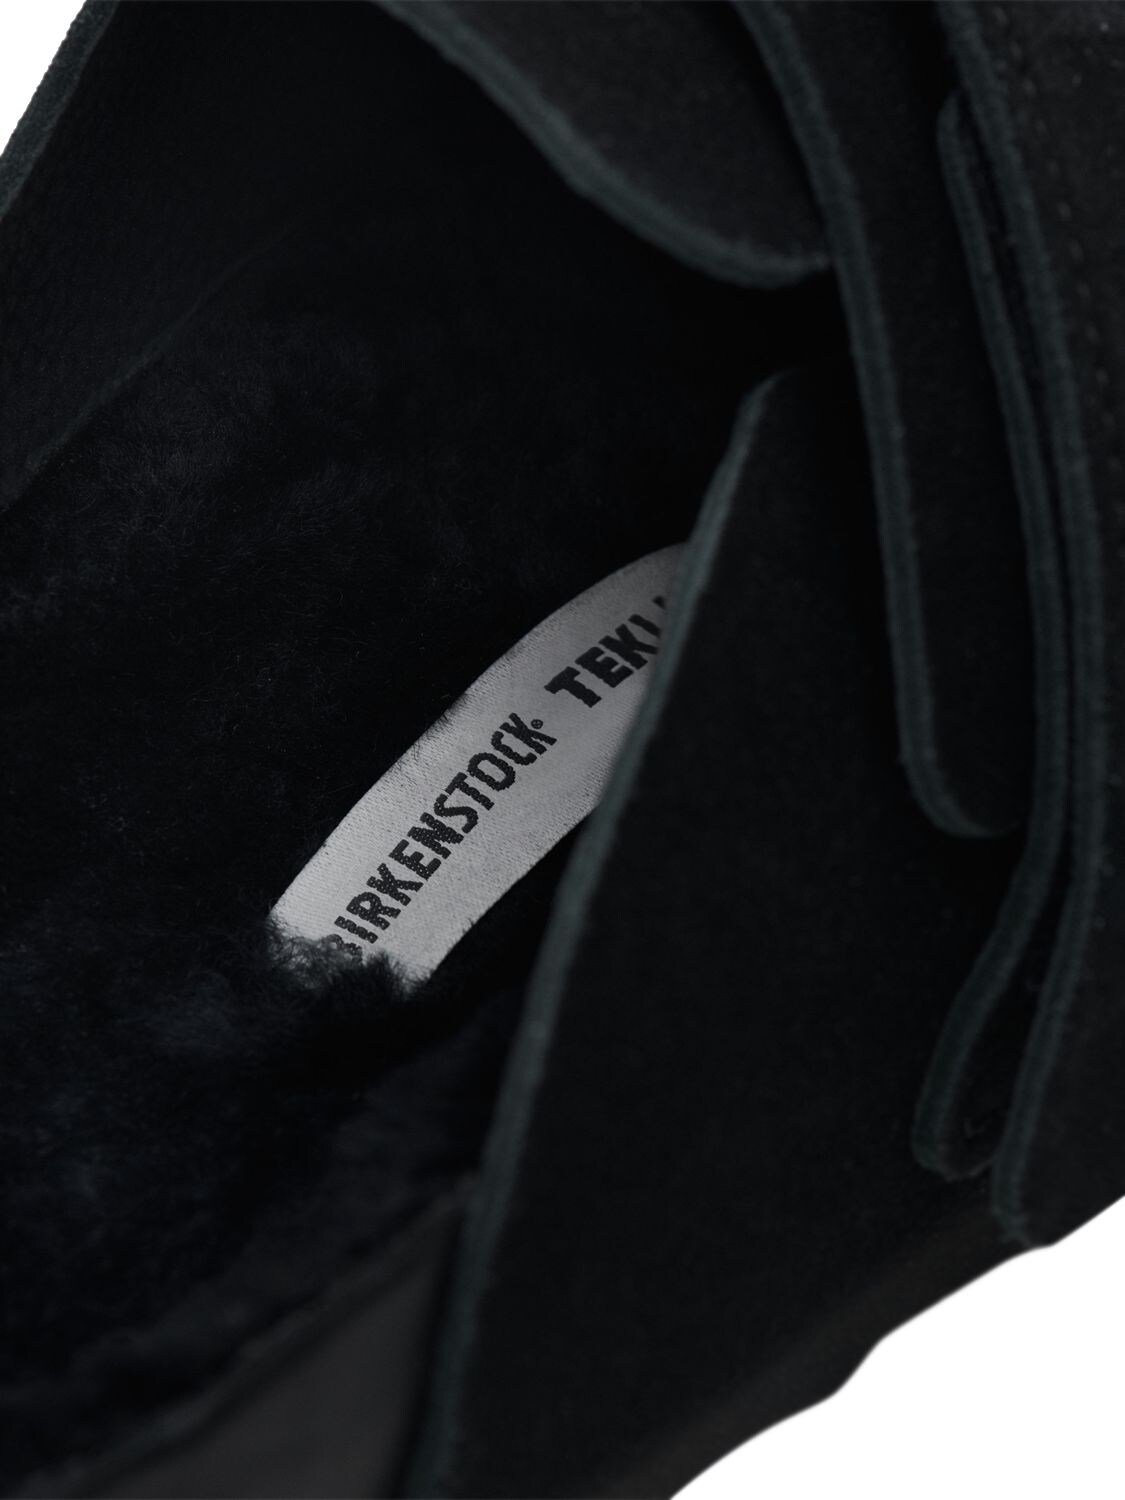 Shop Birkenstock Tekla Nagoya Suede Loafer In Black